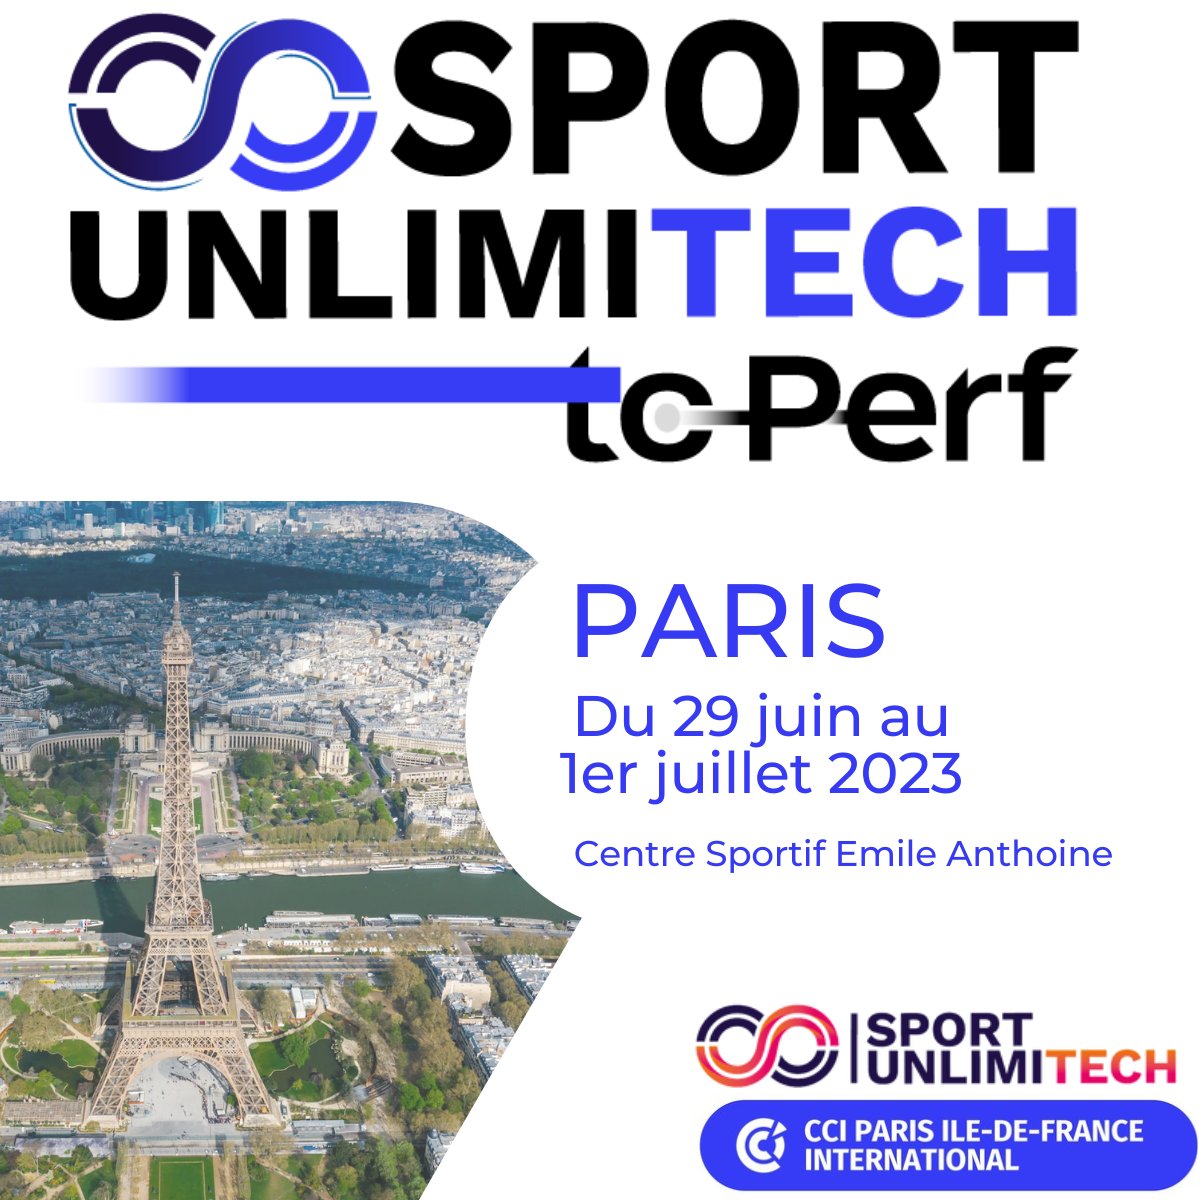 📆 Du 29 juin au 1er juillet 2023, exposez à @SportUnlimitech to Perf, le 1er #forum de la filière #SporTech à Paris !

🤓 Au programme : conférences, ateliers, animations, expositions et #networking 🤝

Réservez votre stand 👉 bit.ly/3H48hhS